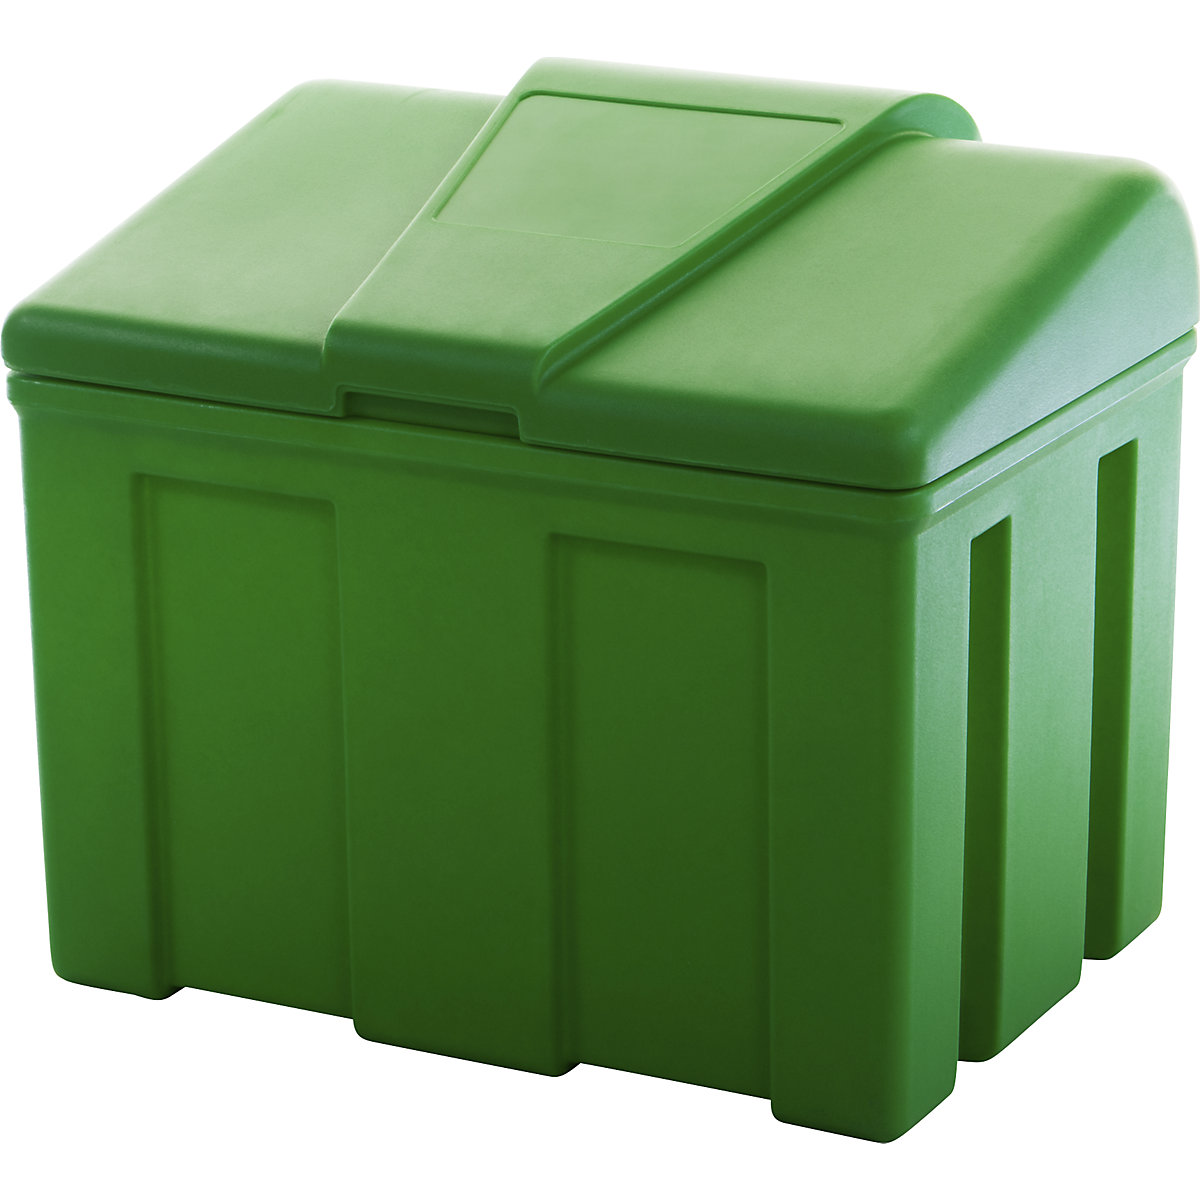 Skladišni spremnik za sipke tvari – eurokraft basic, volumen 110 l, u zelenoj boji-1